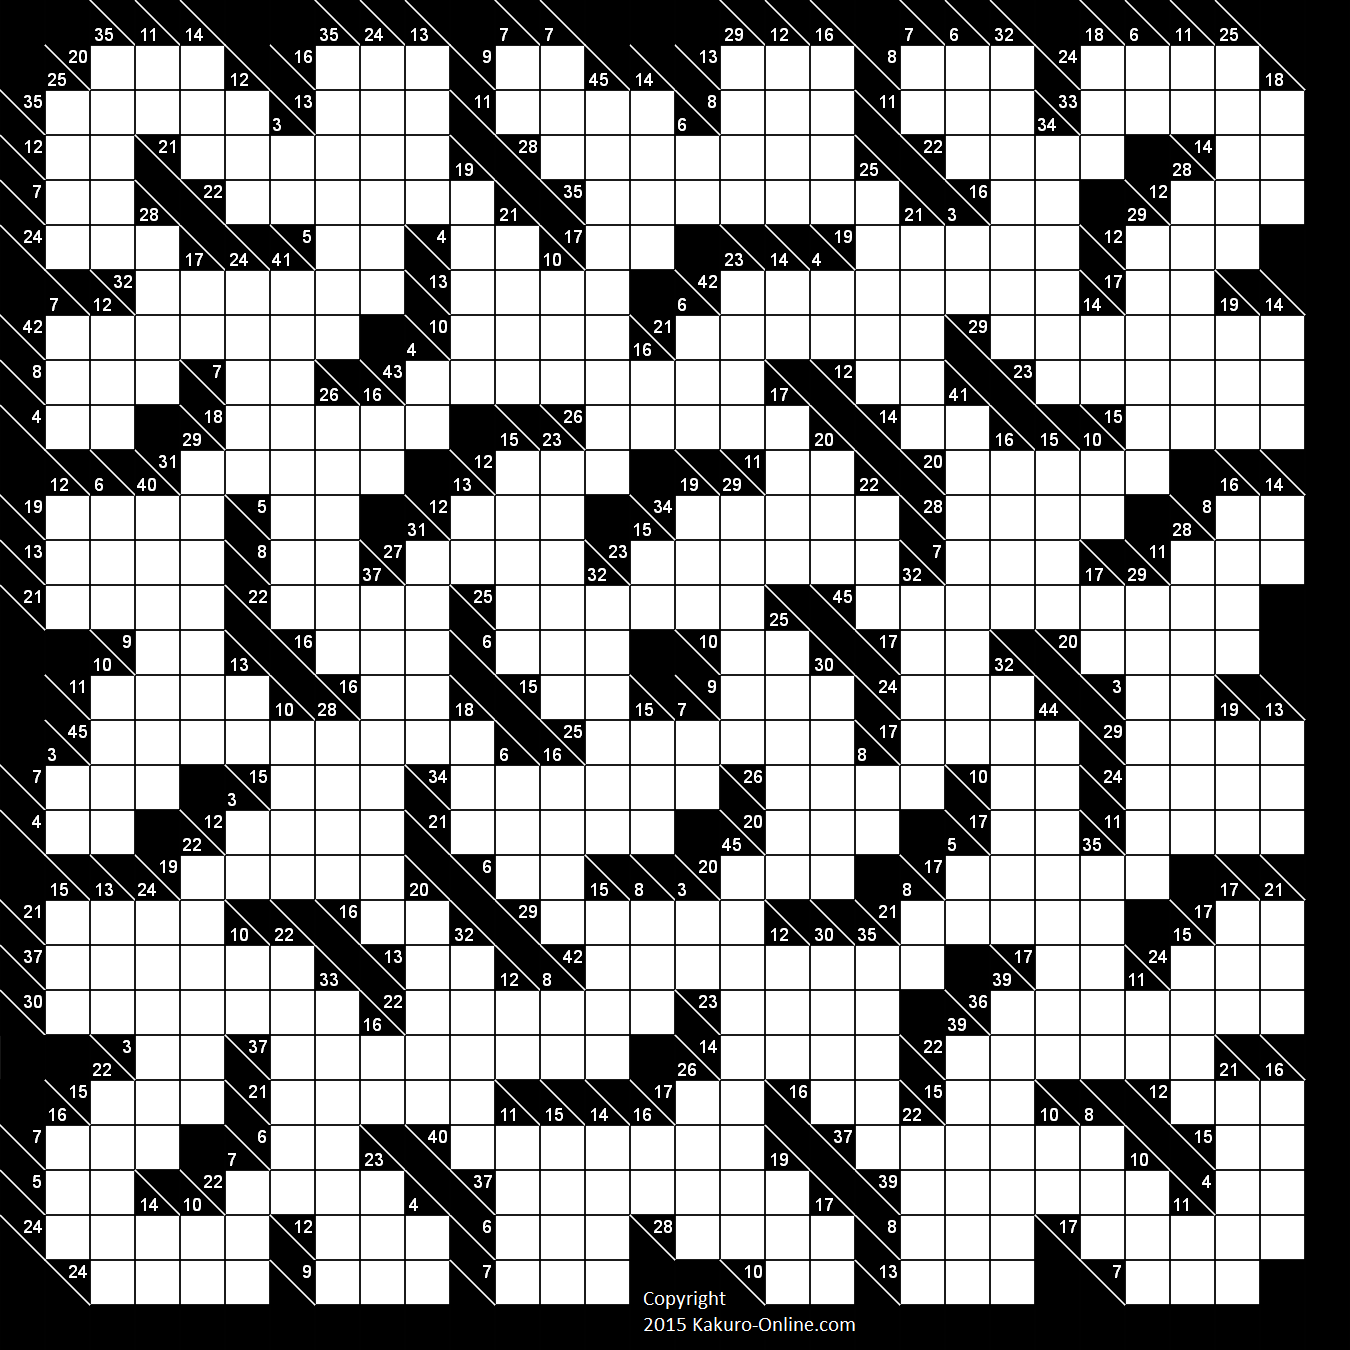 Free Printable Kakuro Puzzles Online